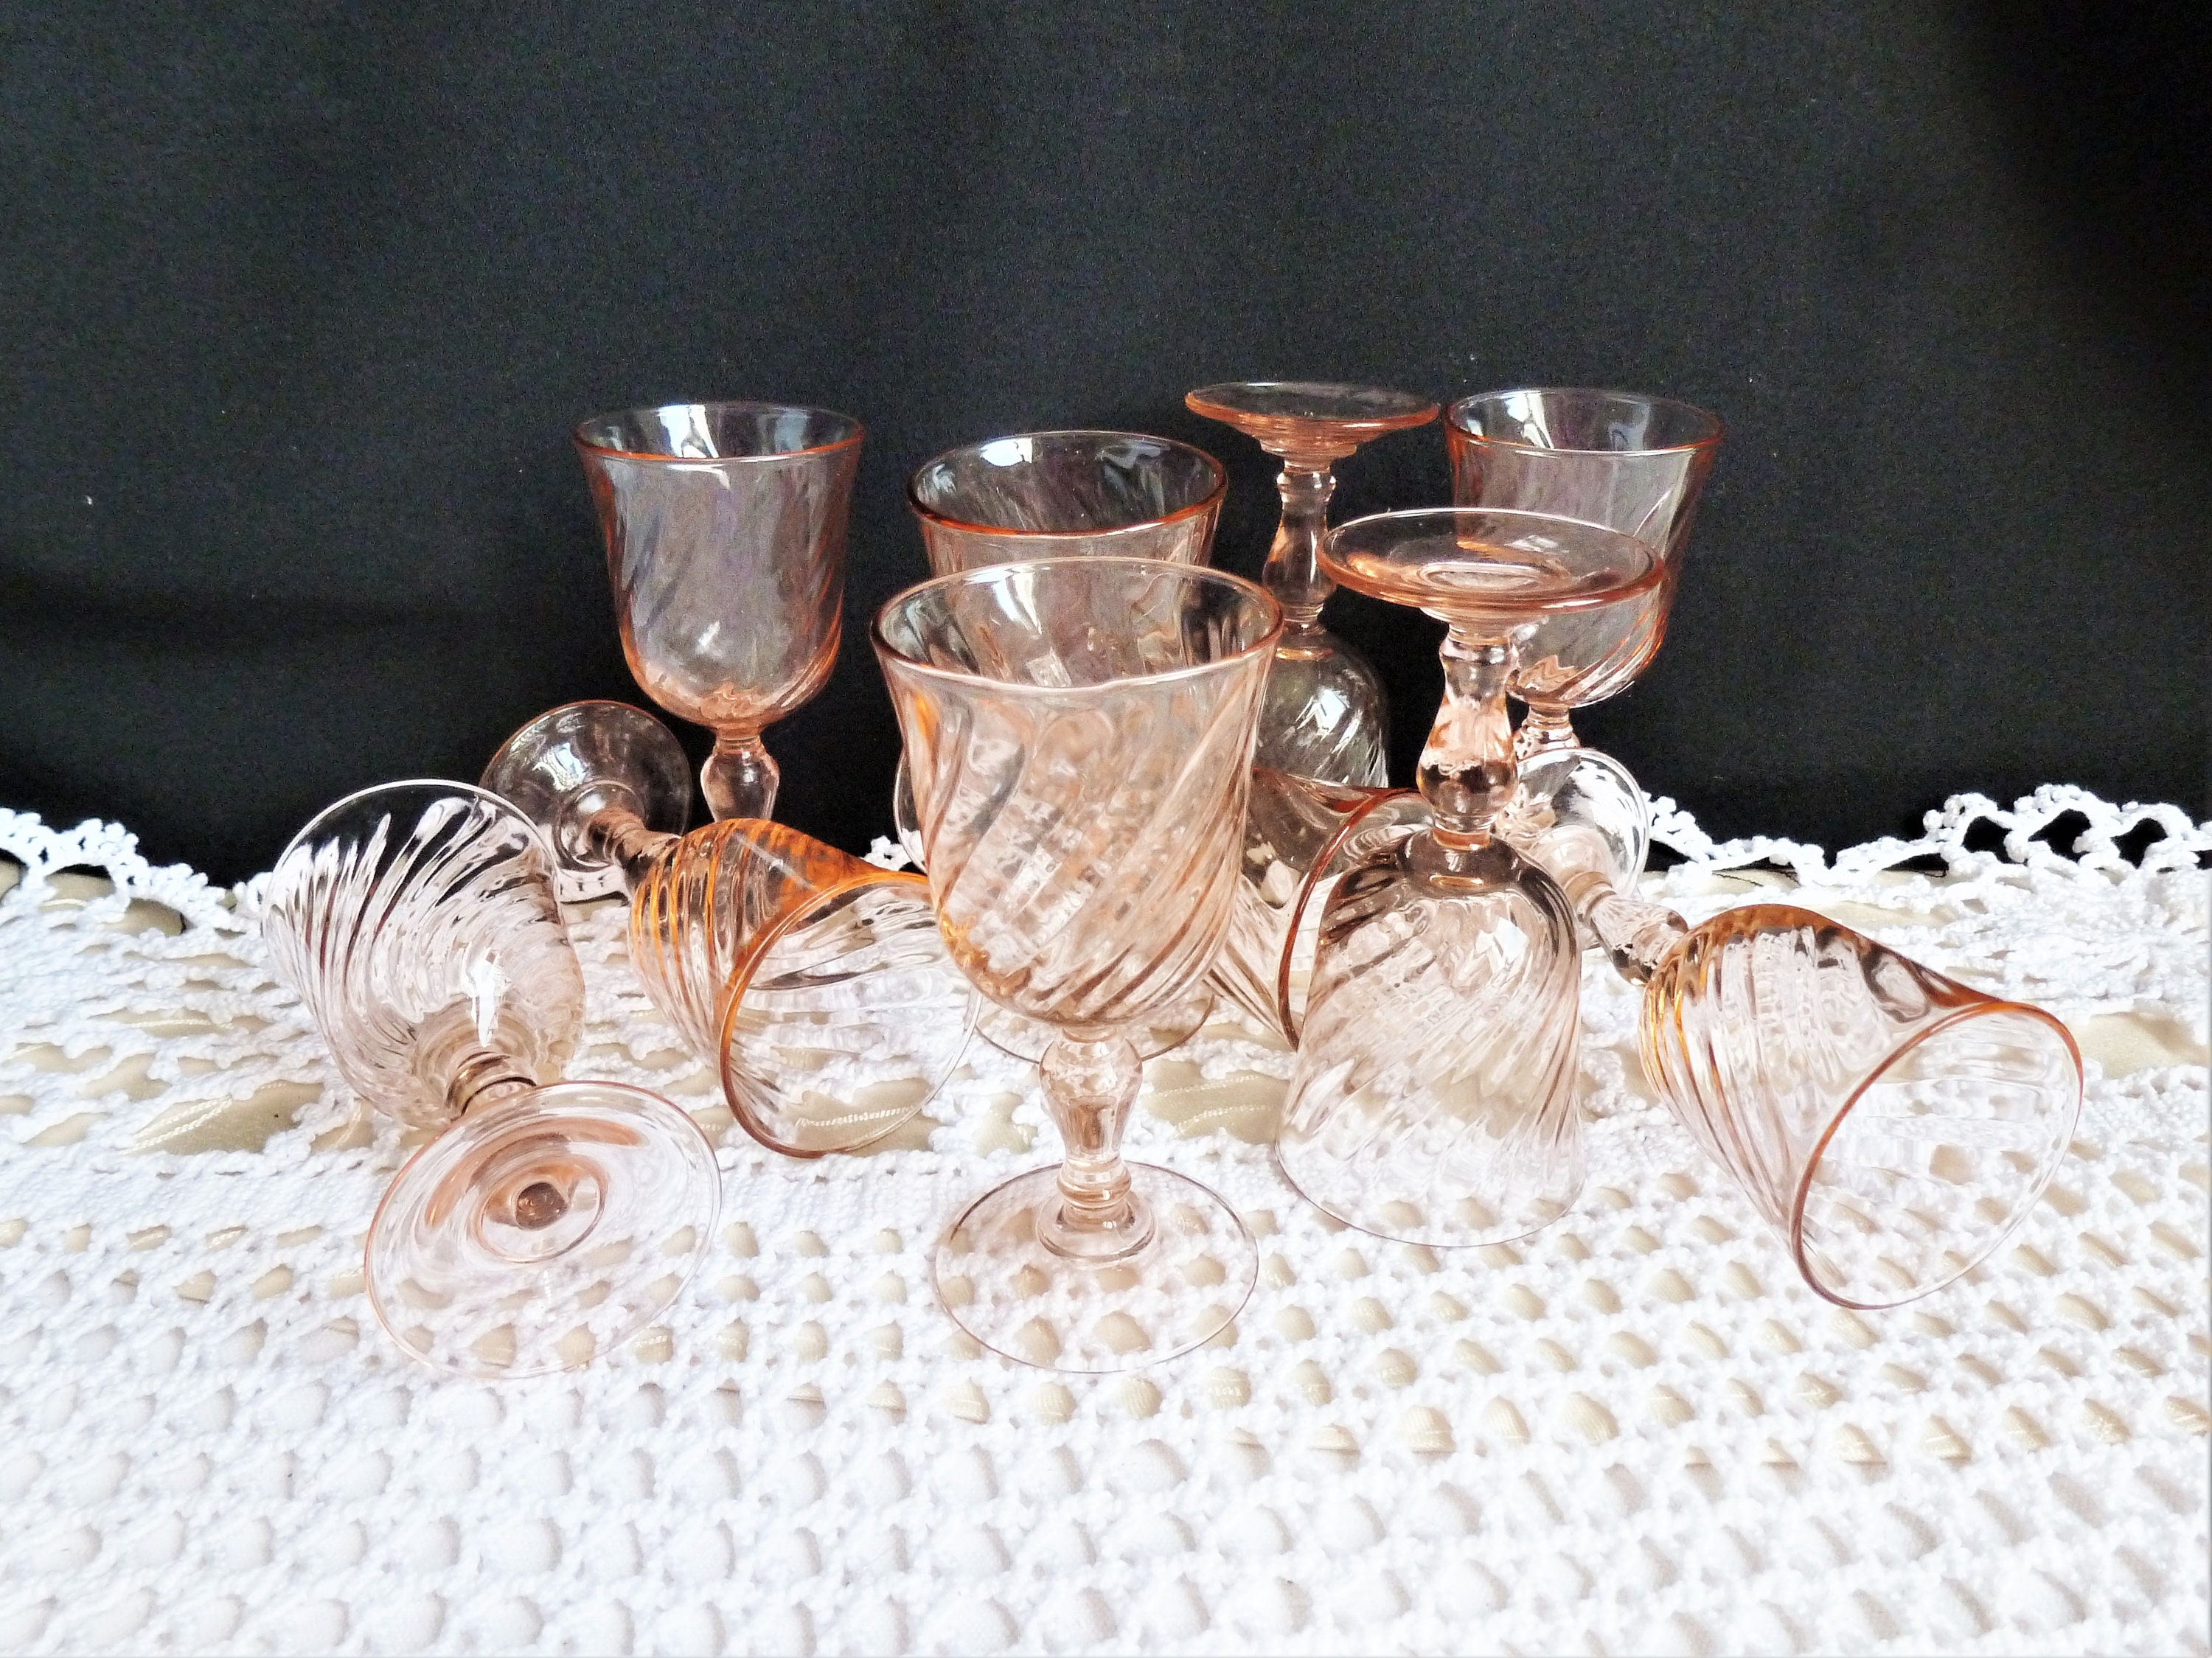 Ensemble de verres à vin transparents, verre à liqueur Brandy Whisky Vodka,  style nordique, fête de